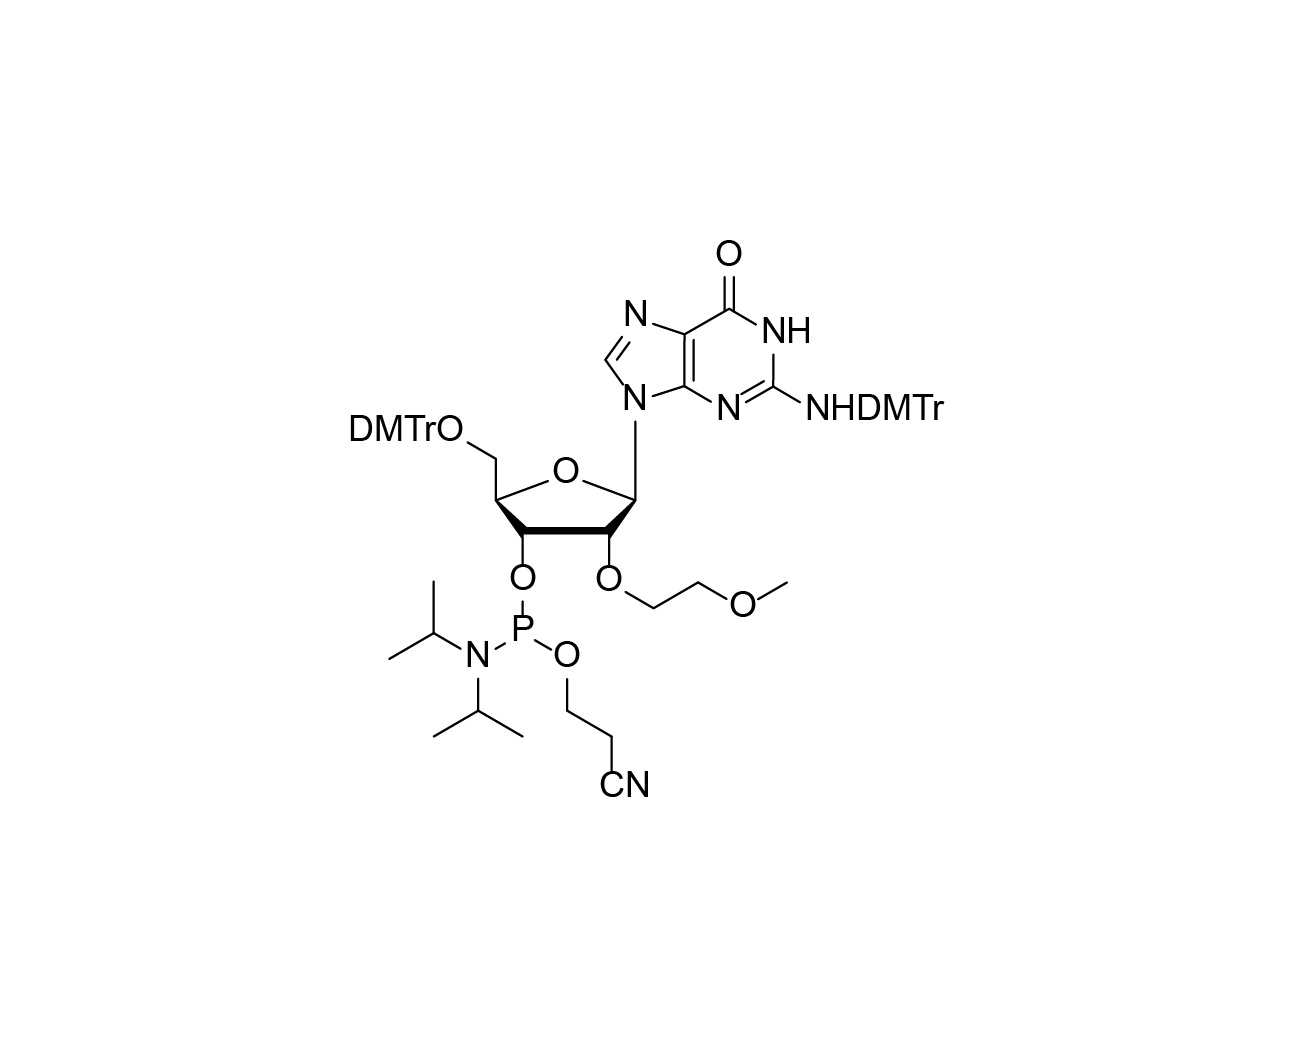 DMTr-2'-O-MOE-rG(DMTr)-3'-CE-Phosphoramidite